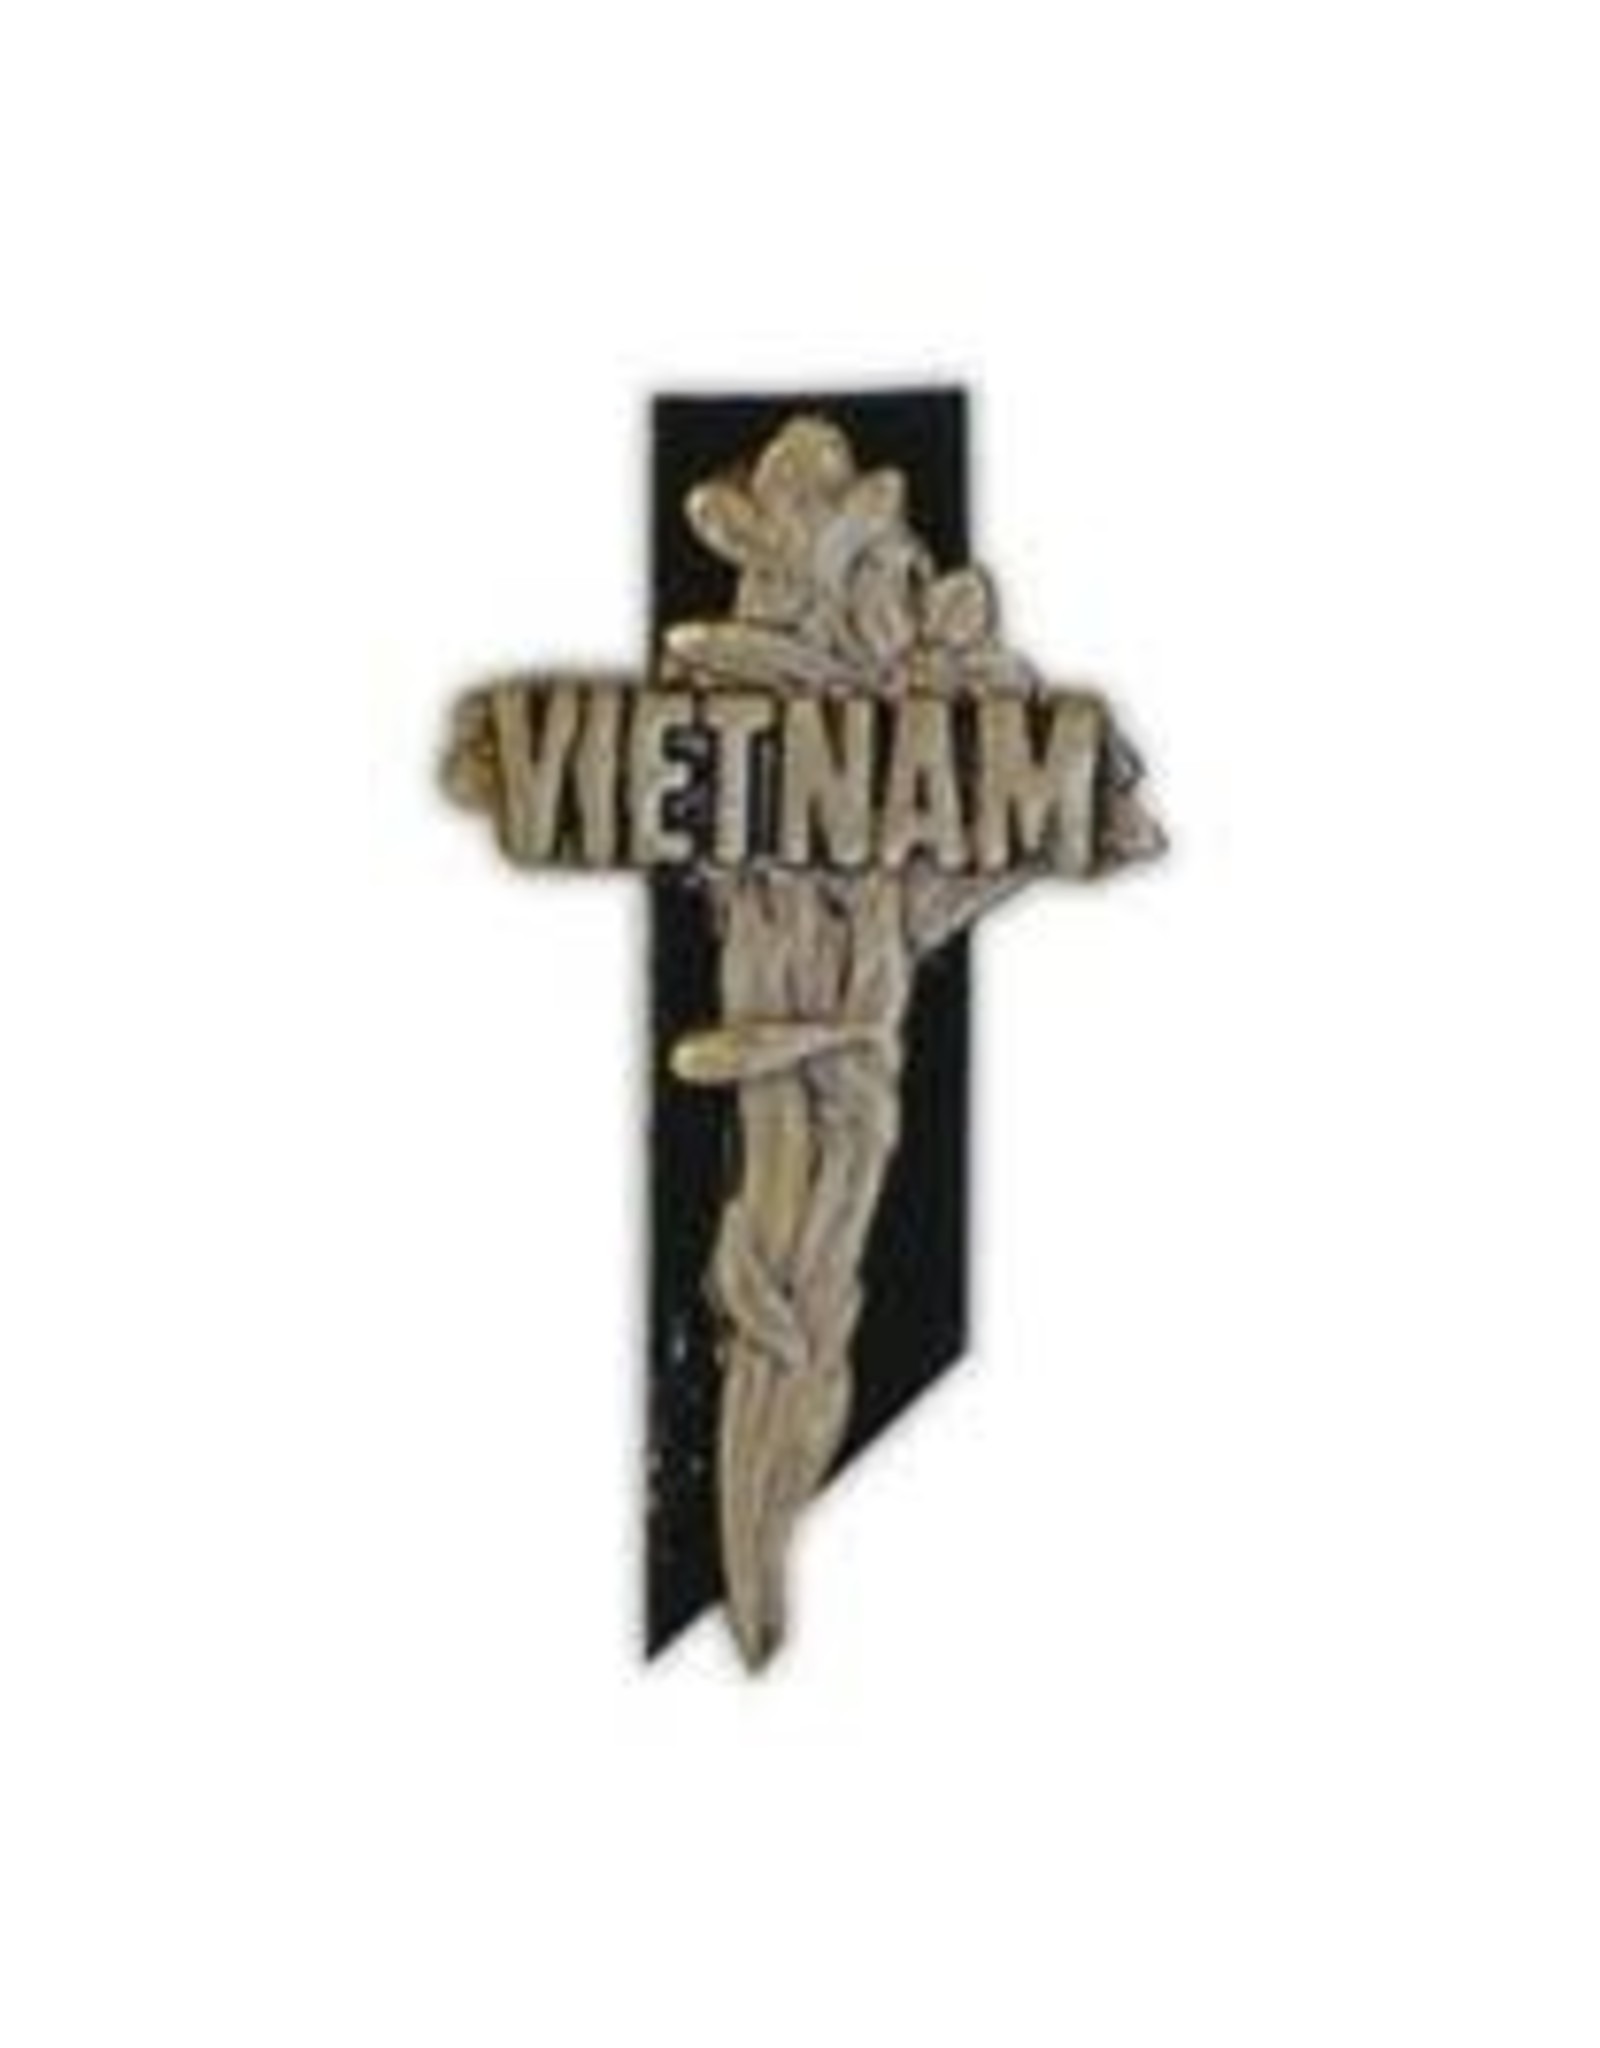 Pin - Vietnam Memorial Cross